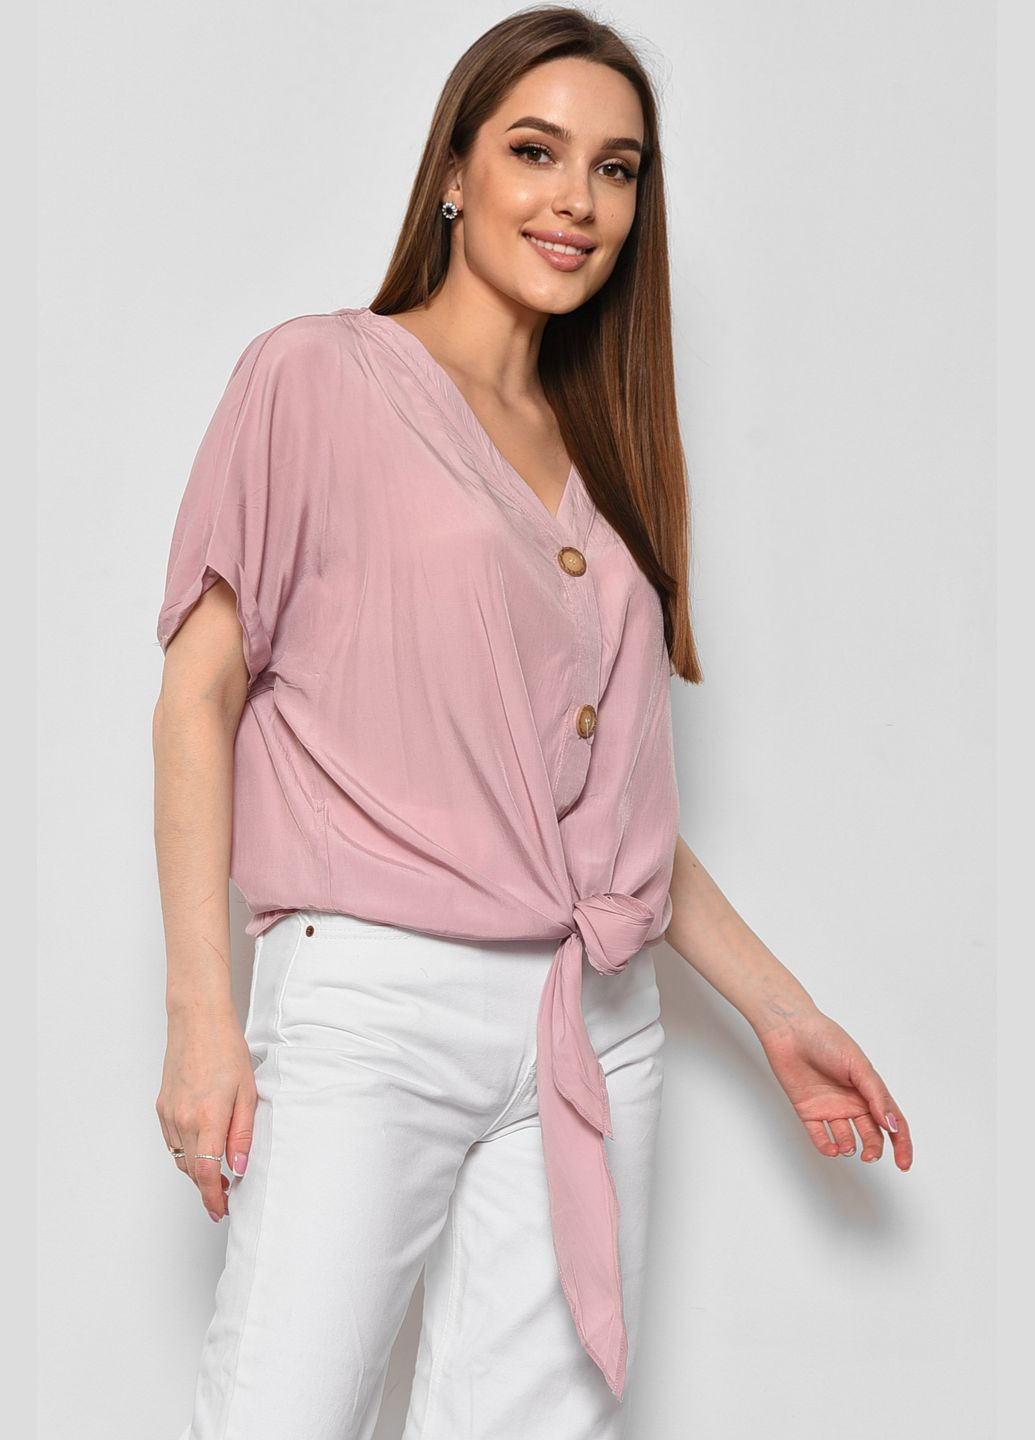 Пудровая блуза женская полубатальная с коротким рукавом пудрового цвета с баской Let's Shop